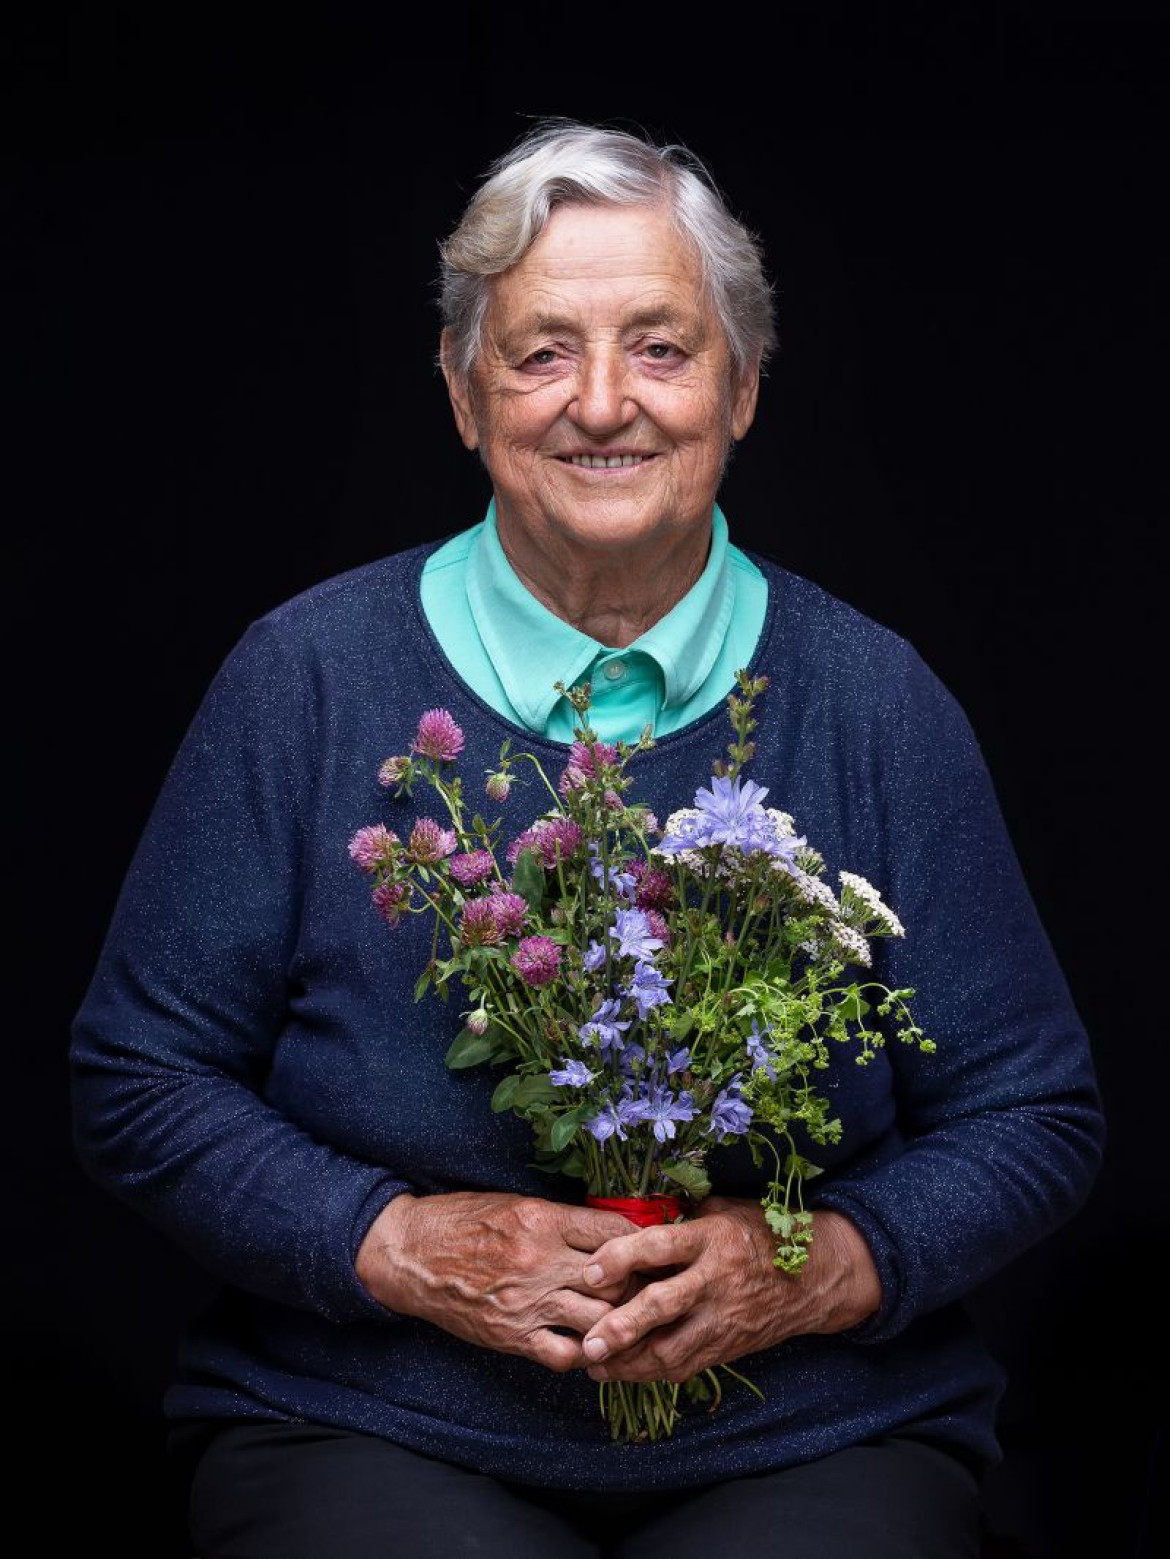 fot. Dominika Koszowska, "The Last Herb Pickers", Srebrny medal w amatorskiej kategorii Editorial